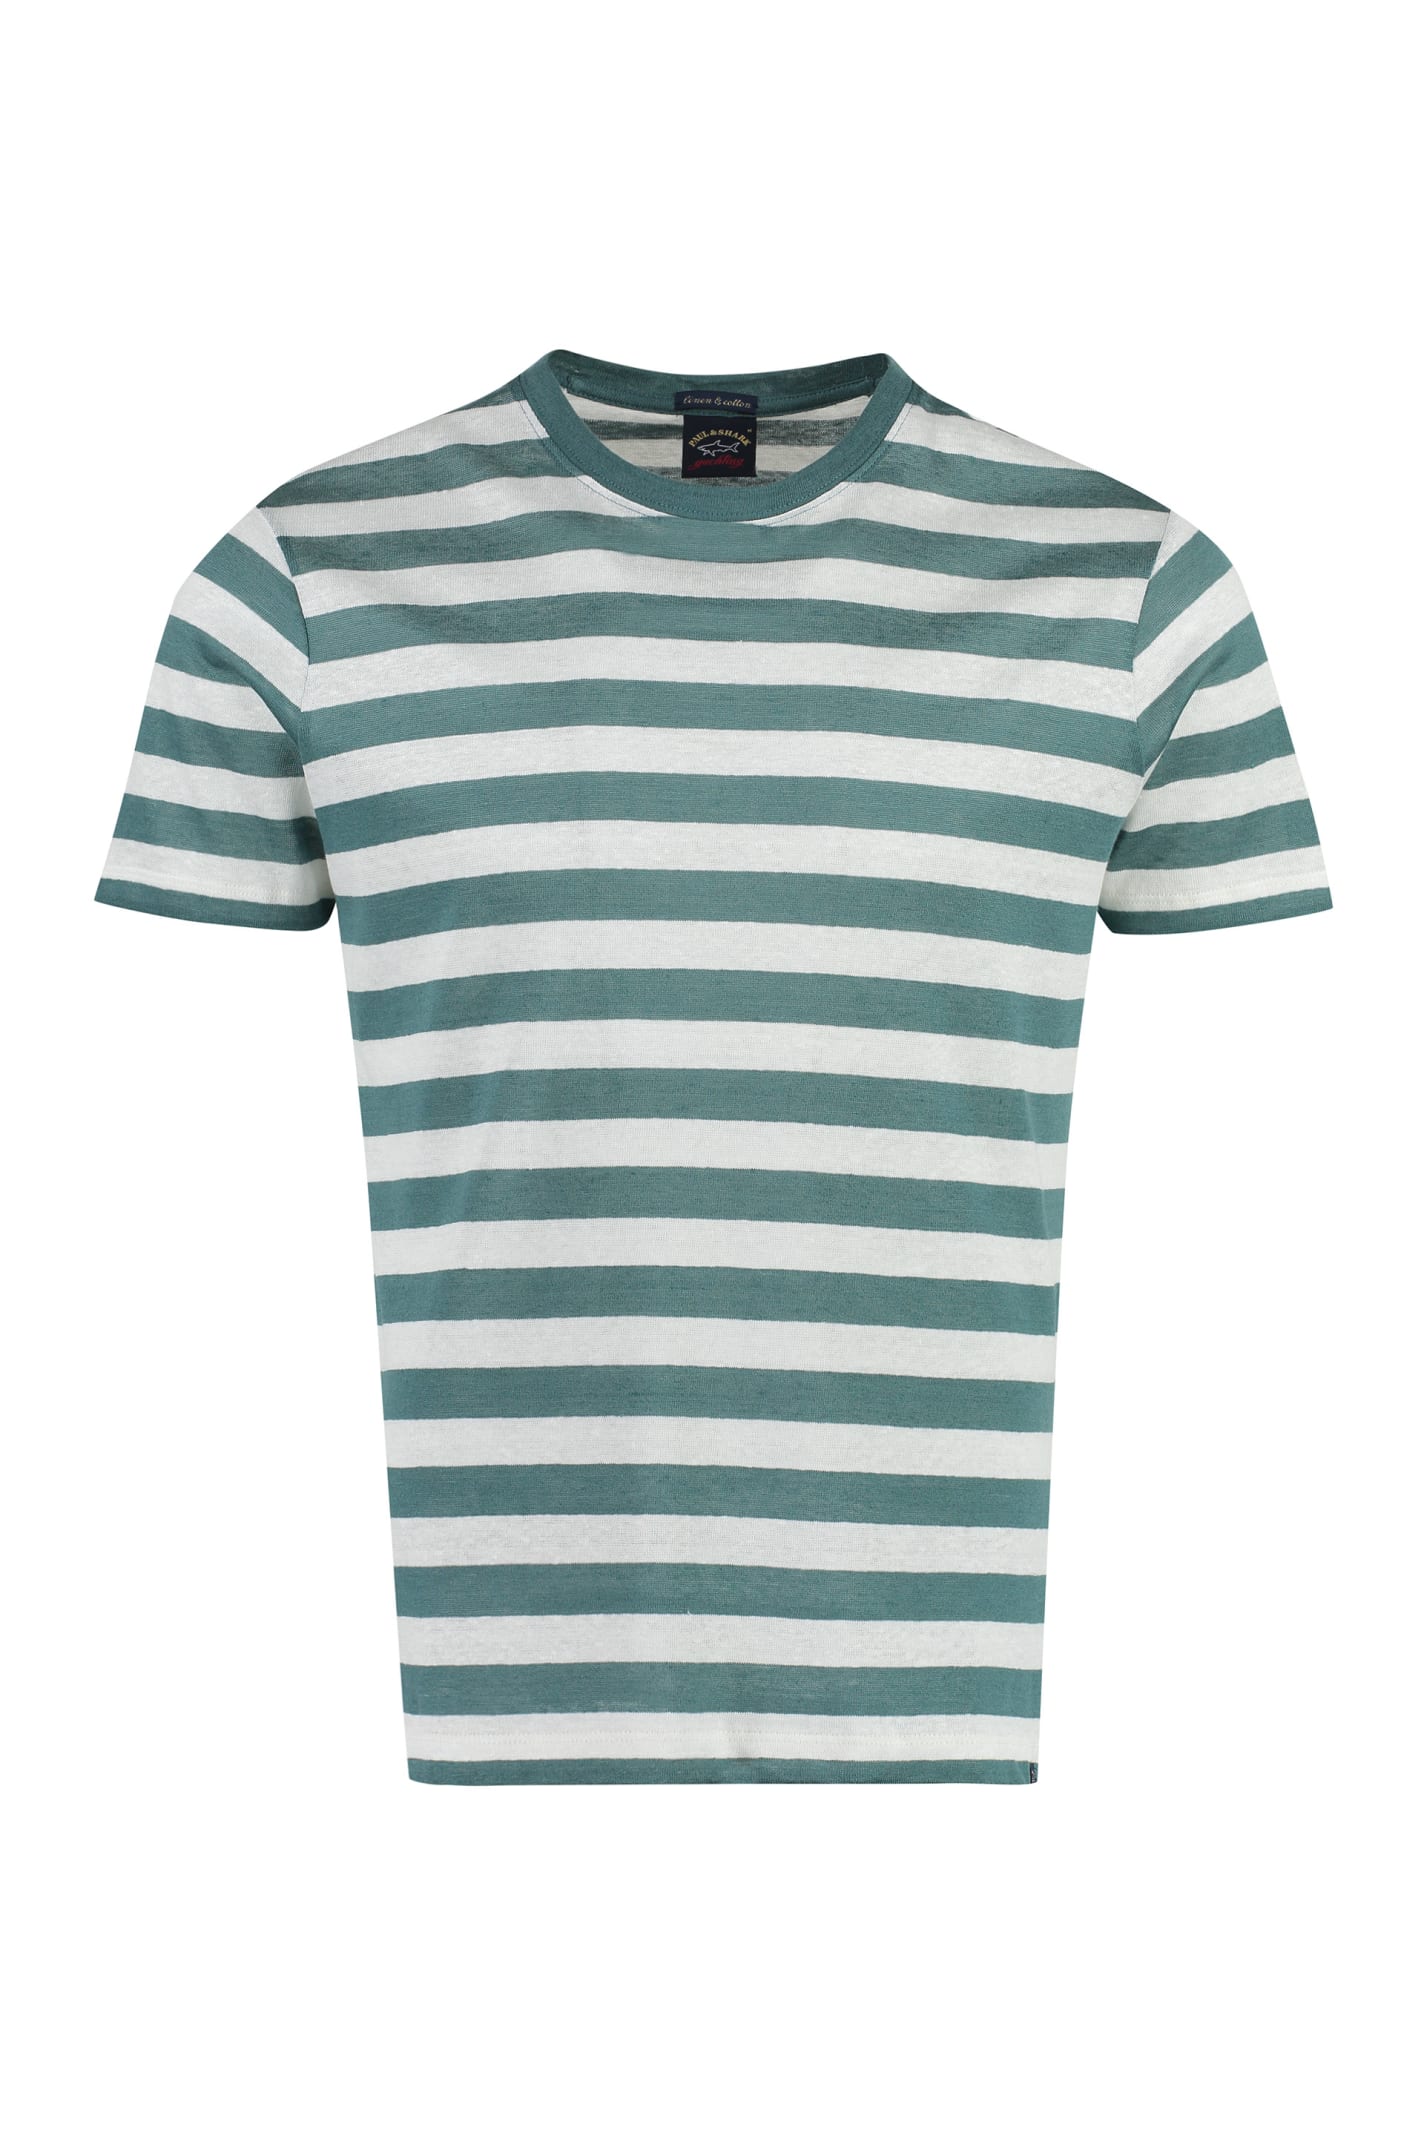 Paul&amp;shark Striped Linen-cotton Blend T-shirt In Green